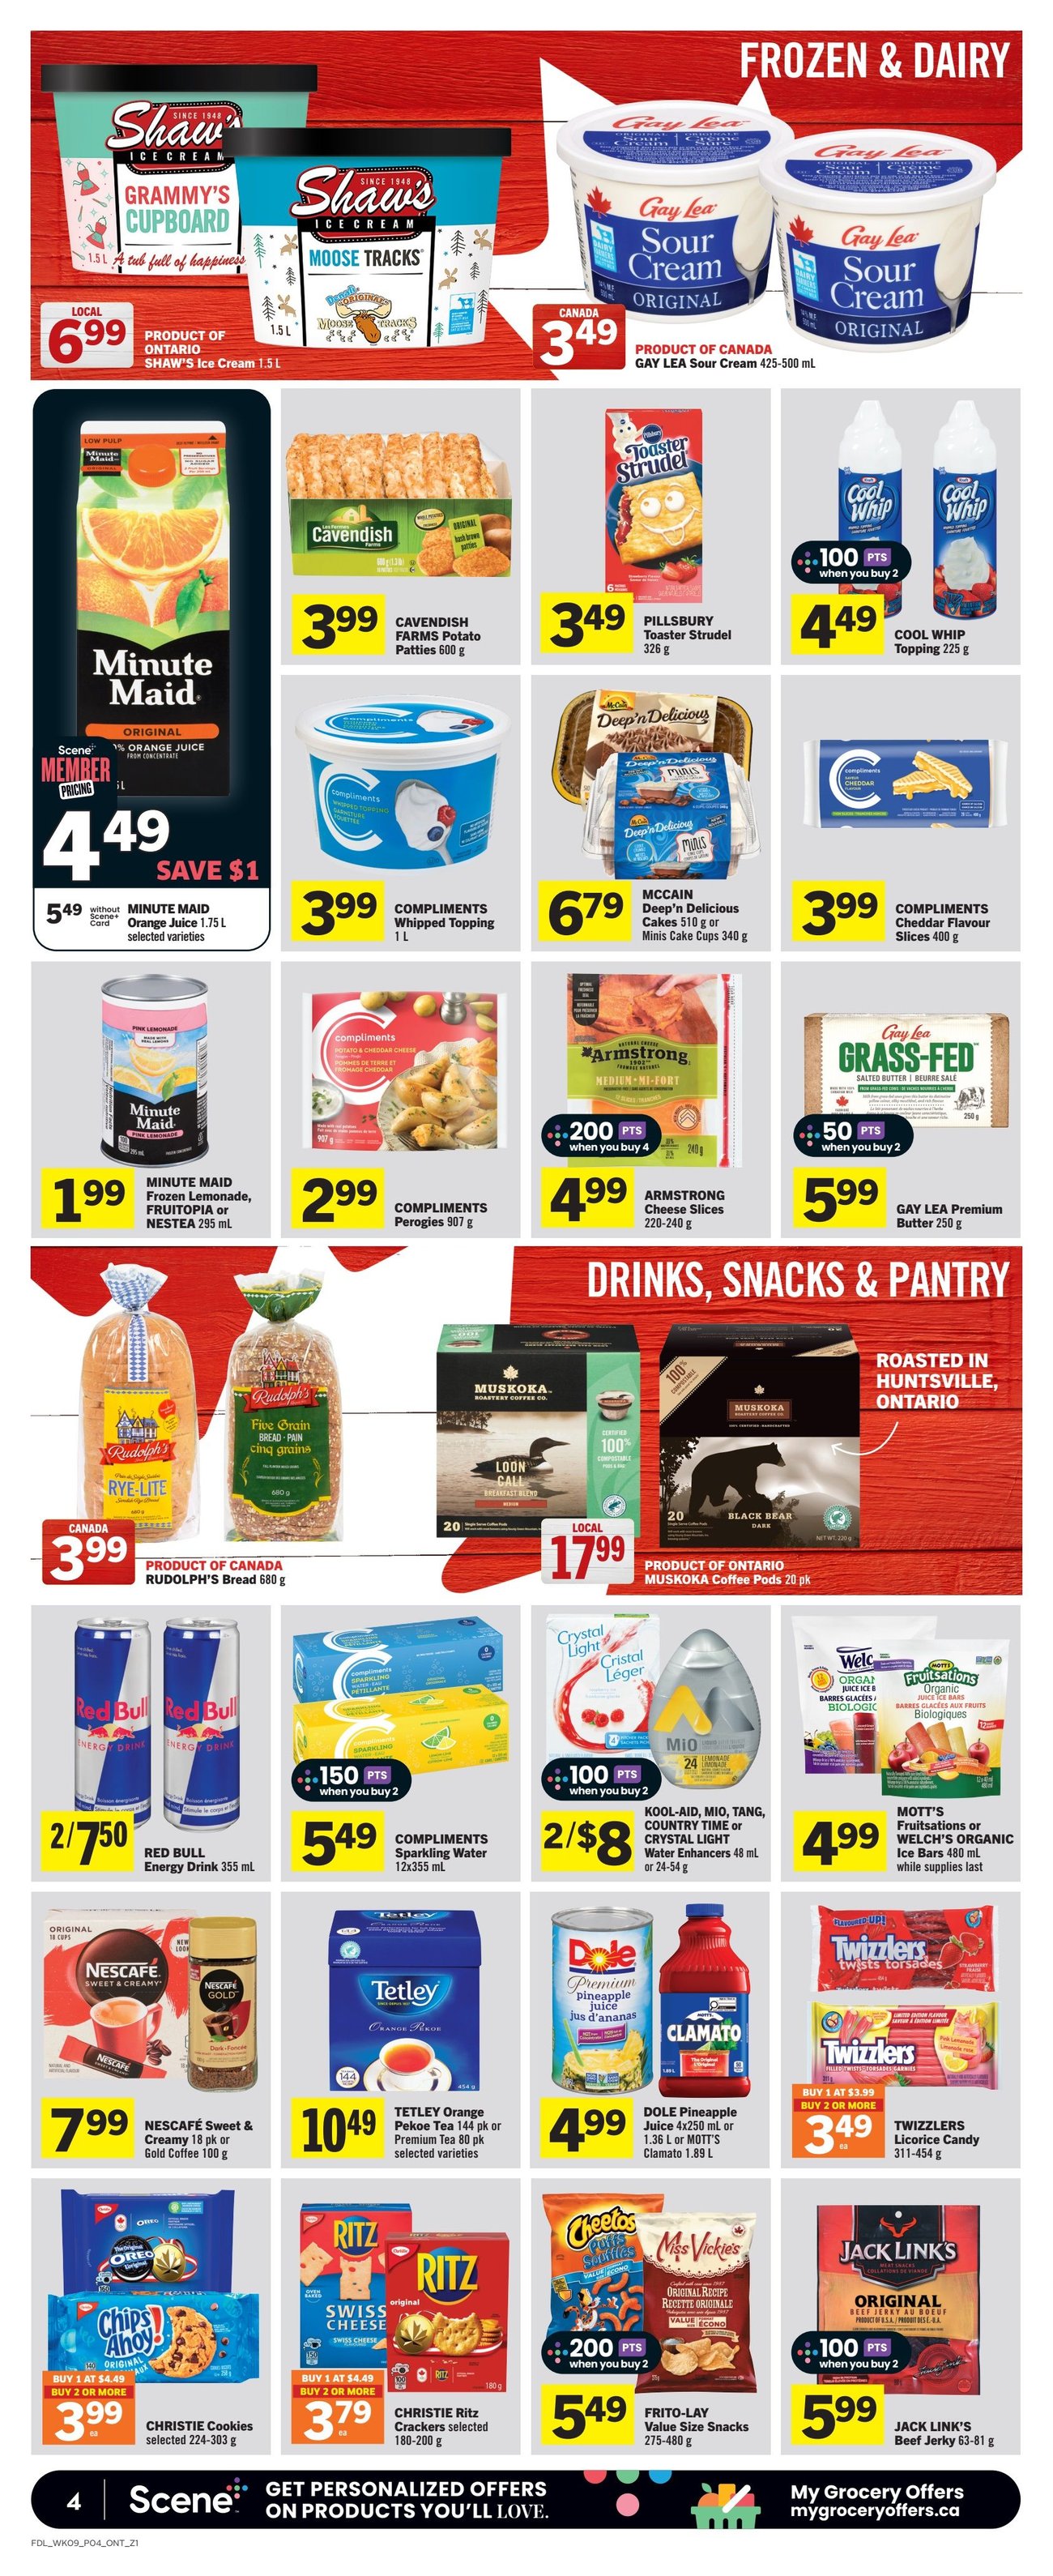 Foodland - Ontario - Weekly Flyer Specials - Page 5